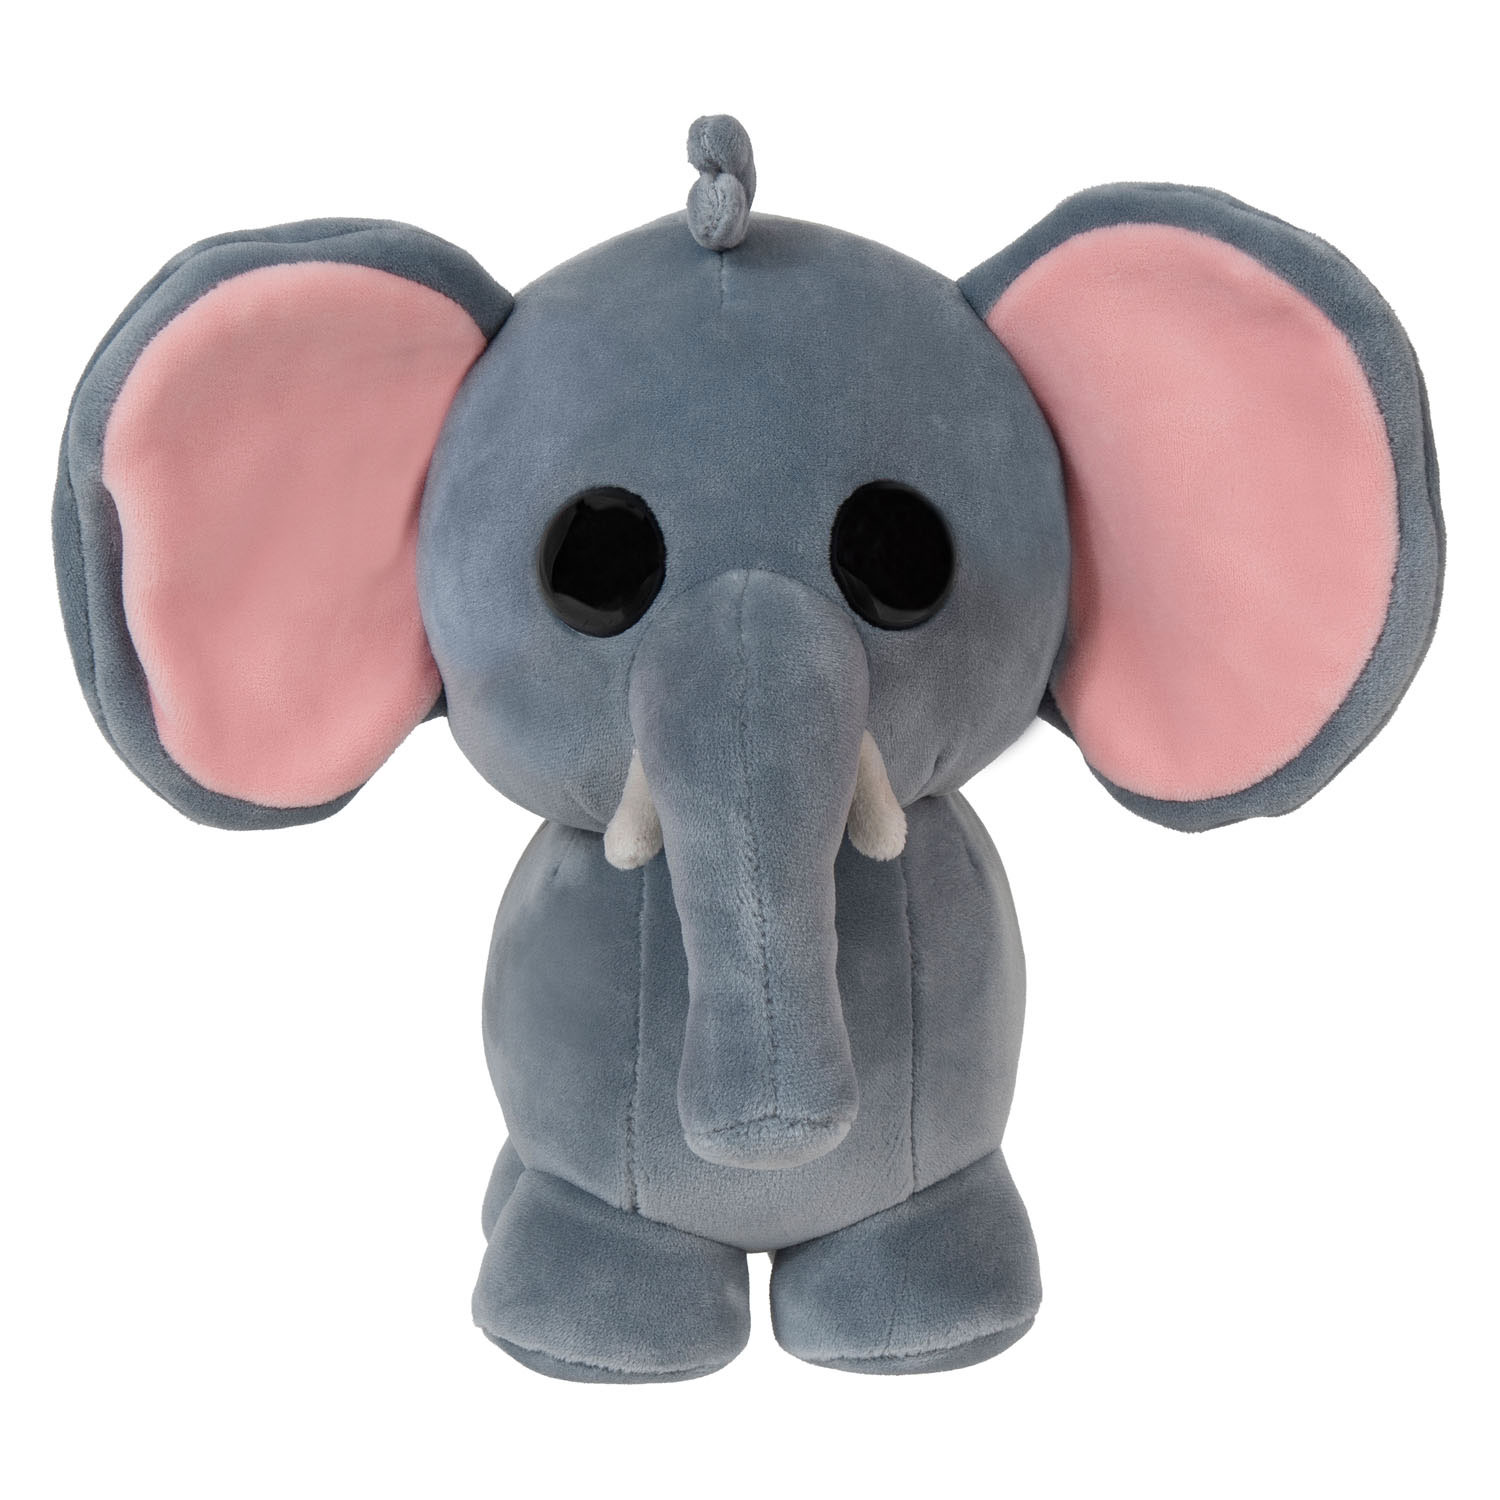 Adopte moi! Collectionneur de peluches câlins - Éléphant, 20 cm